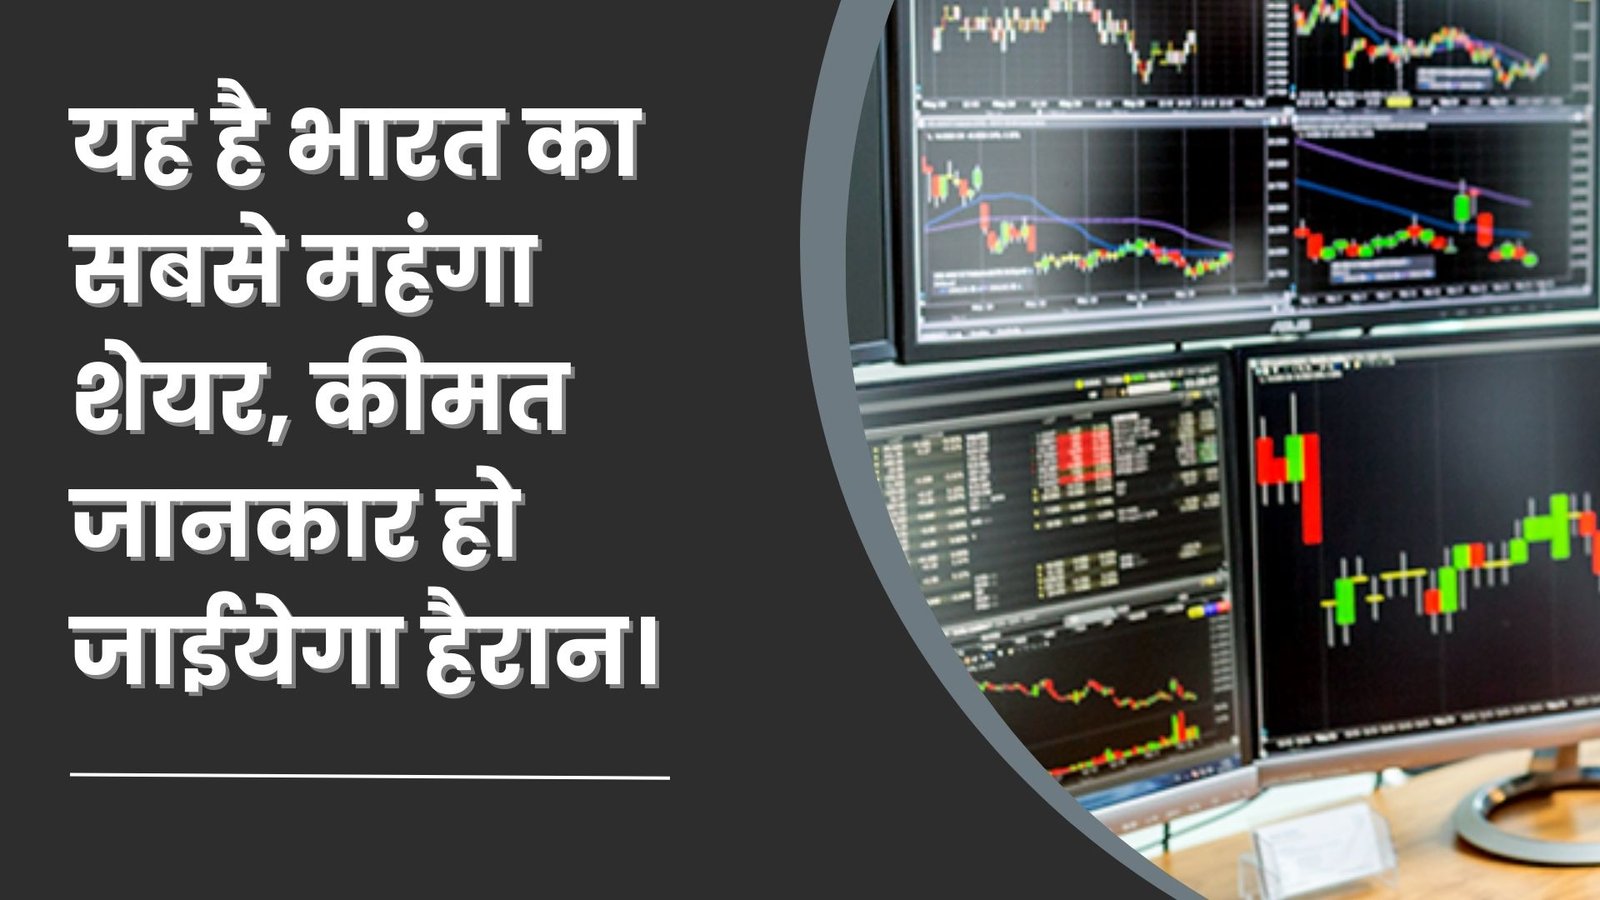 यह है भारत का सबसे महंगा शेयर, कीमत जानकार हो जाईयेगा हैरान। 